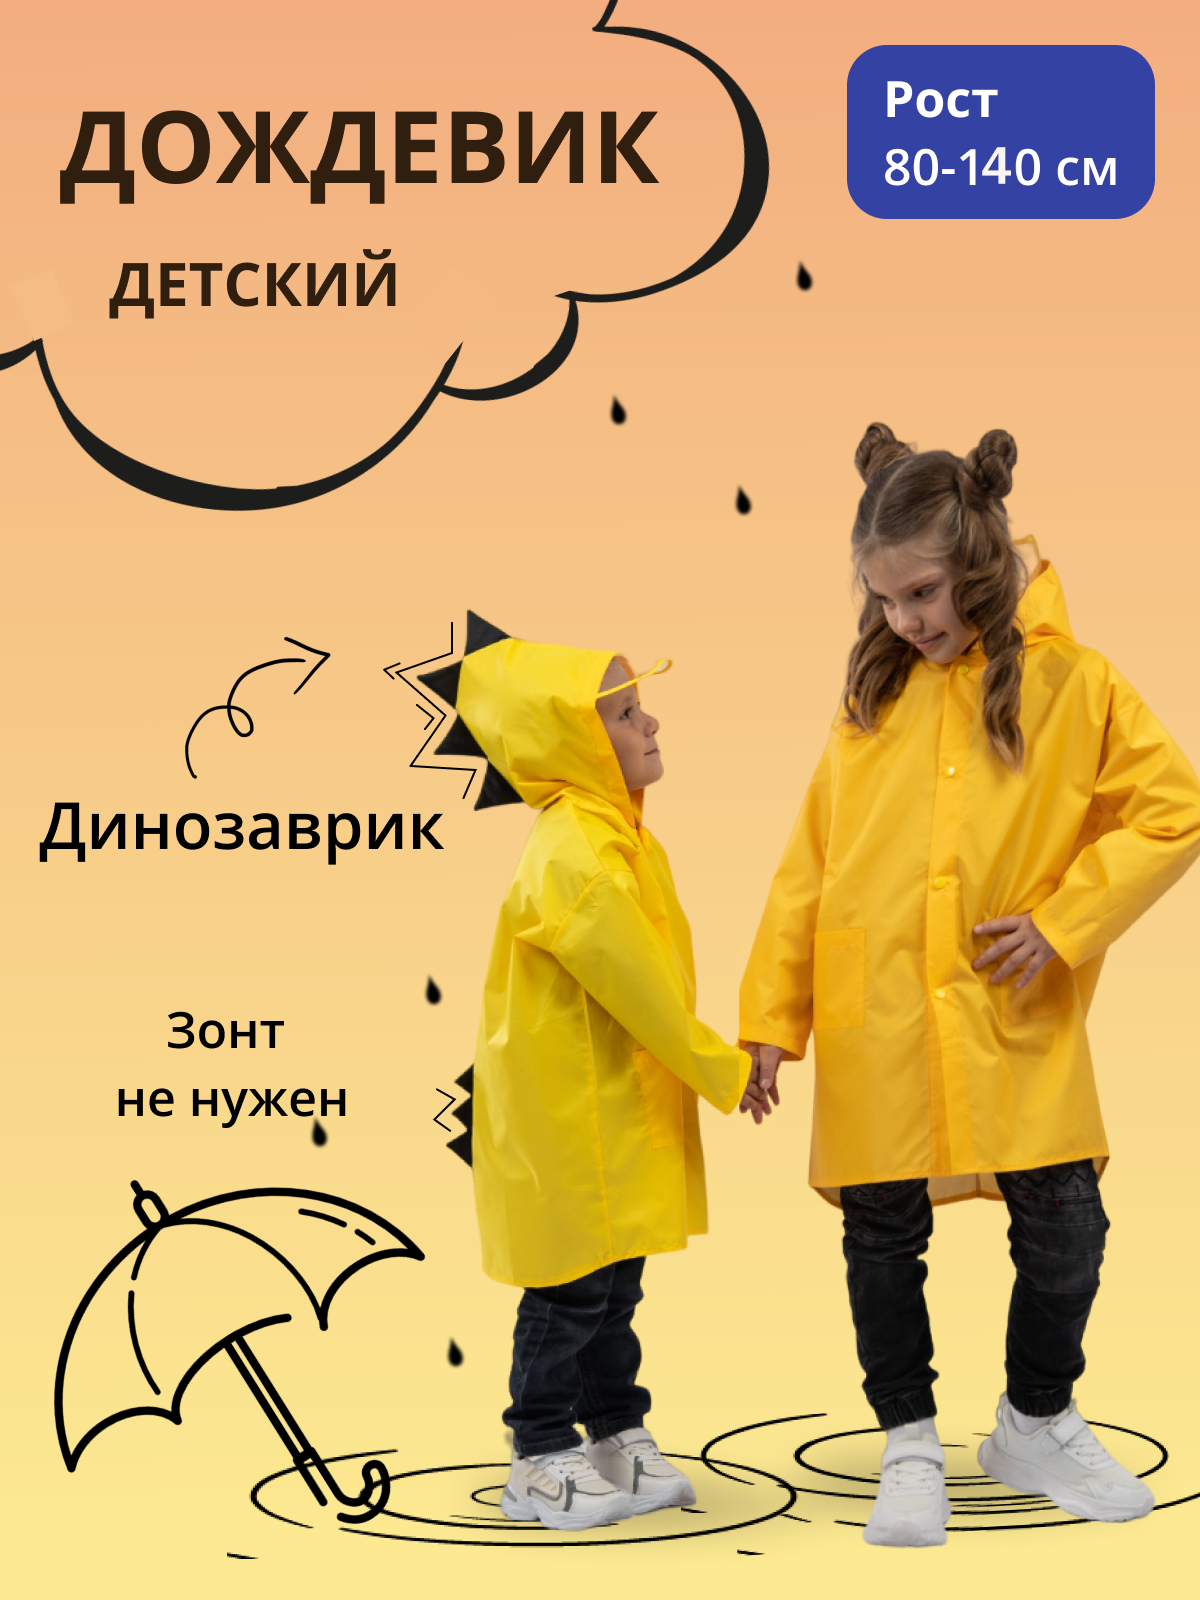 Дождевик детский Под дождем 122855956, желтый, 110